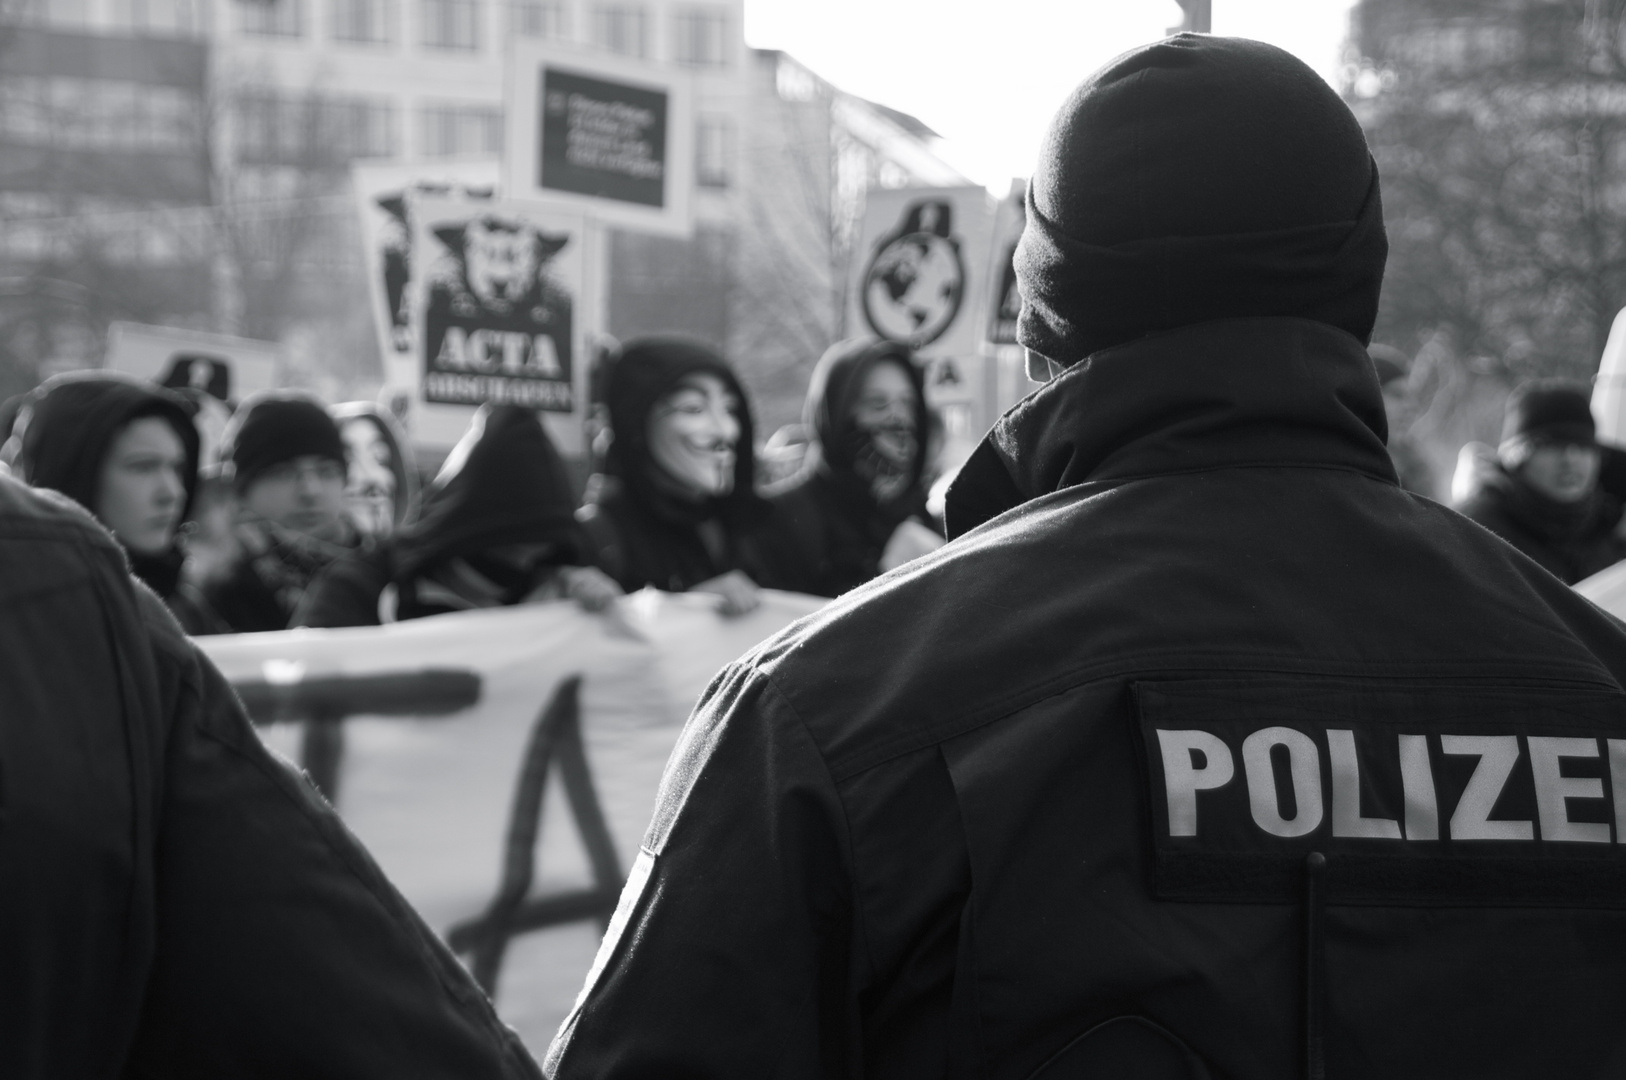 ACTA Demo Leipzig #3